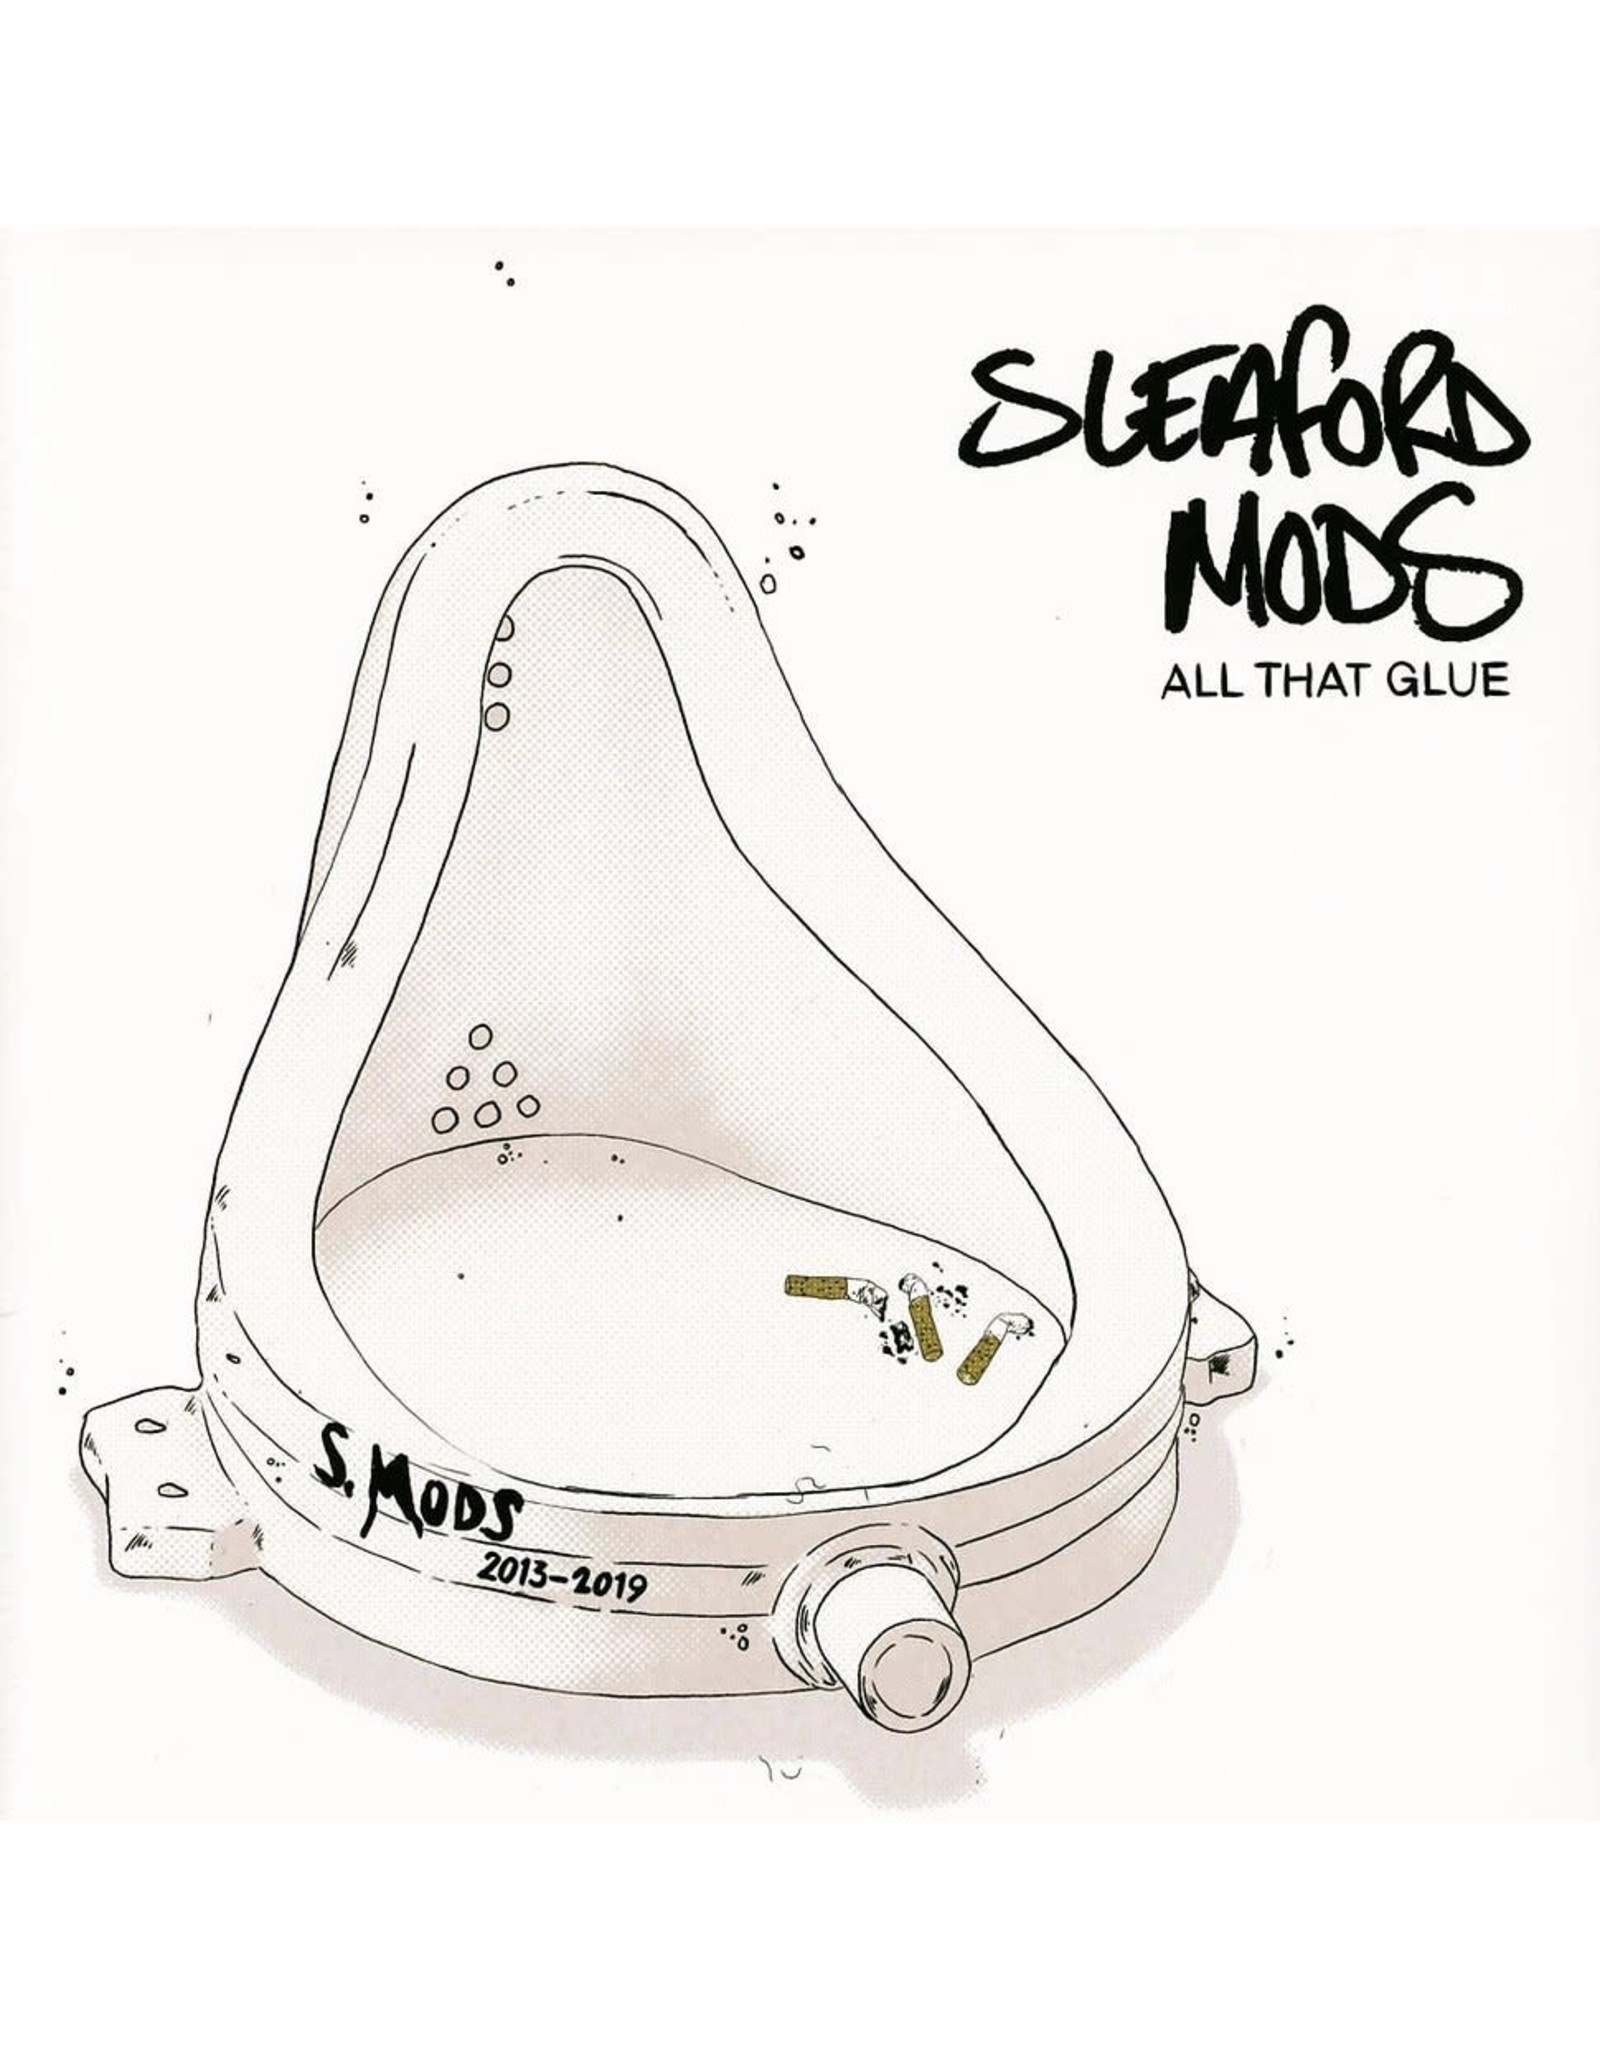 Sleaford Mods - All That Glue (2013-2019)